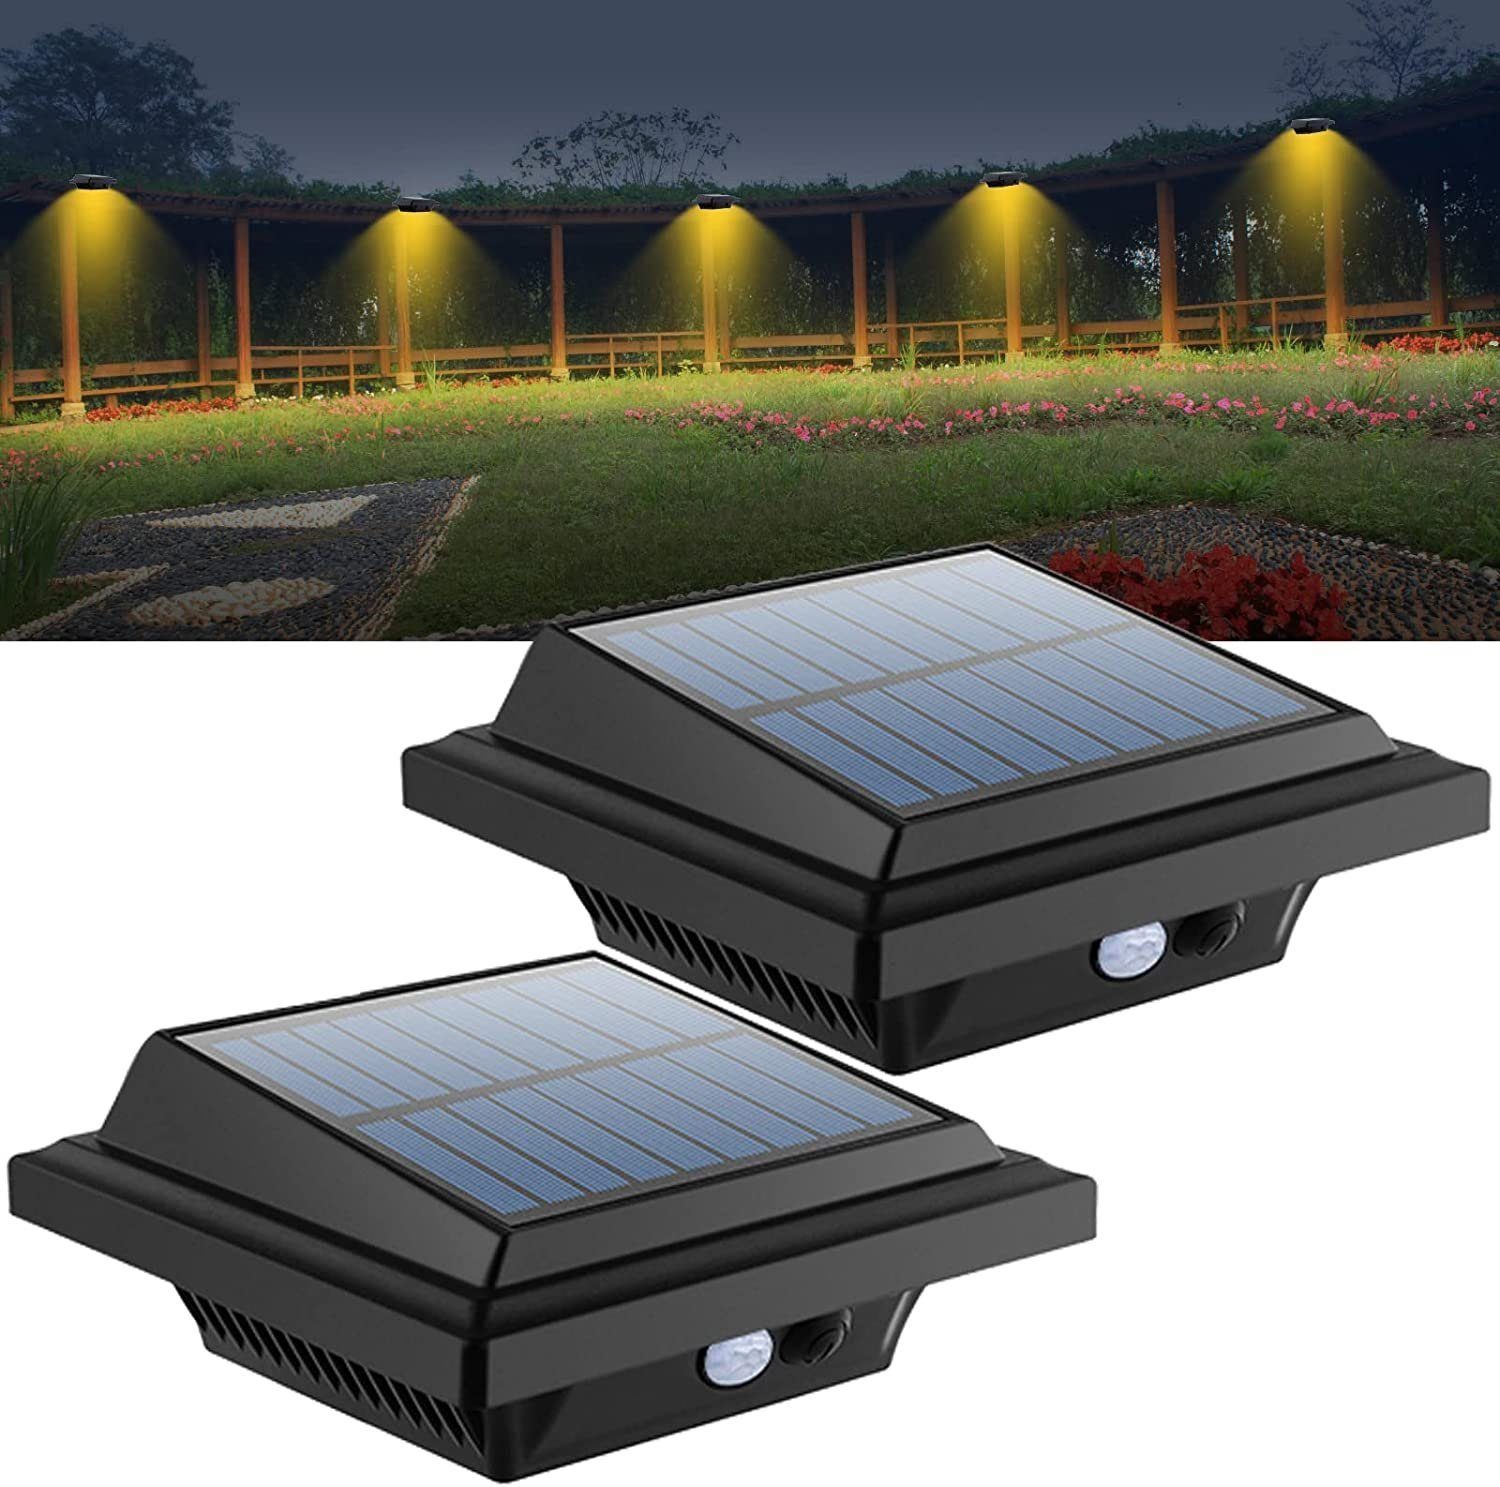 KEENZO Dachrinnenleuchten 2Stk.Solarlampen für Außen, 25 LEDs mit PIR-Sensor, Warmweiß